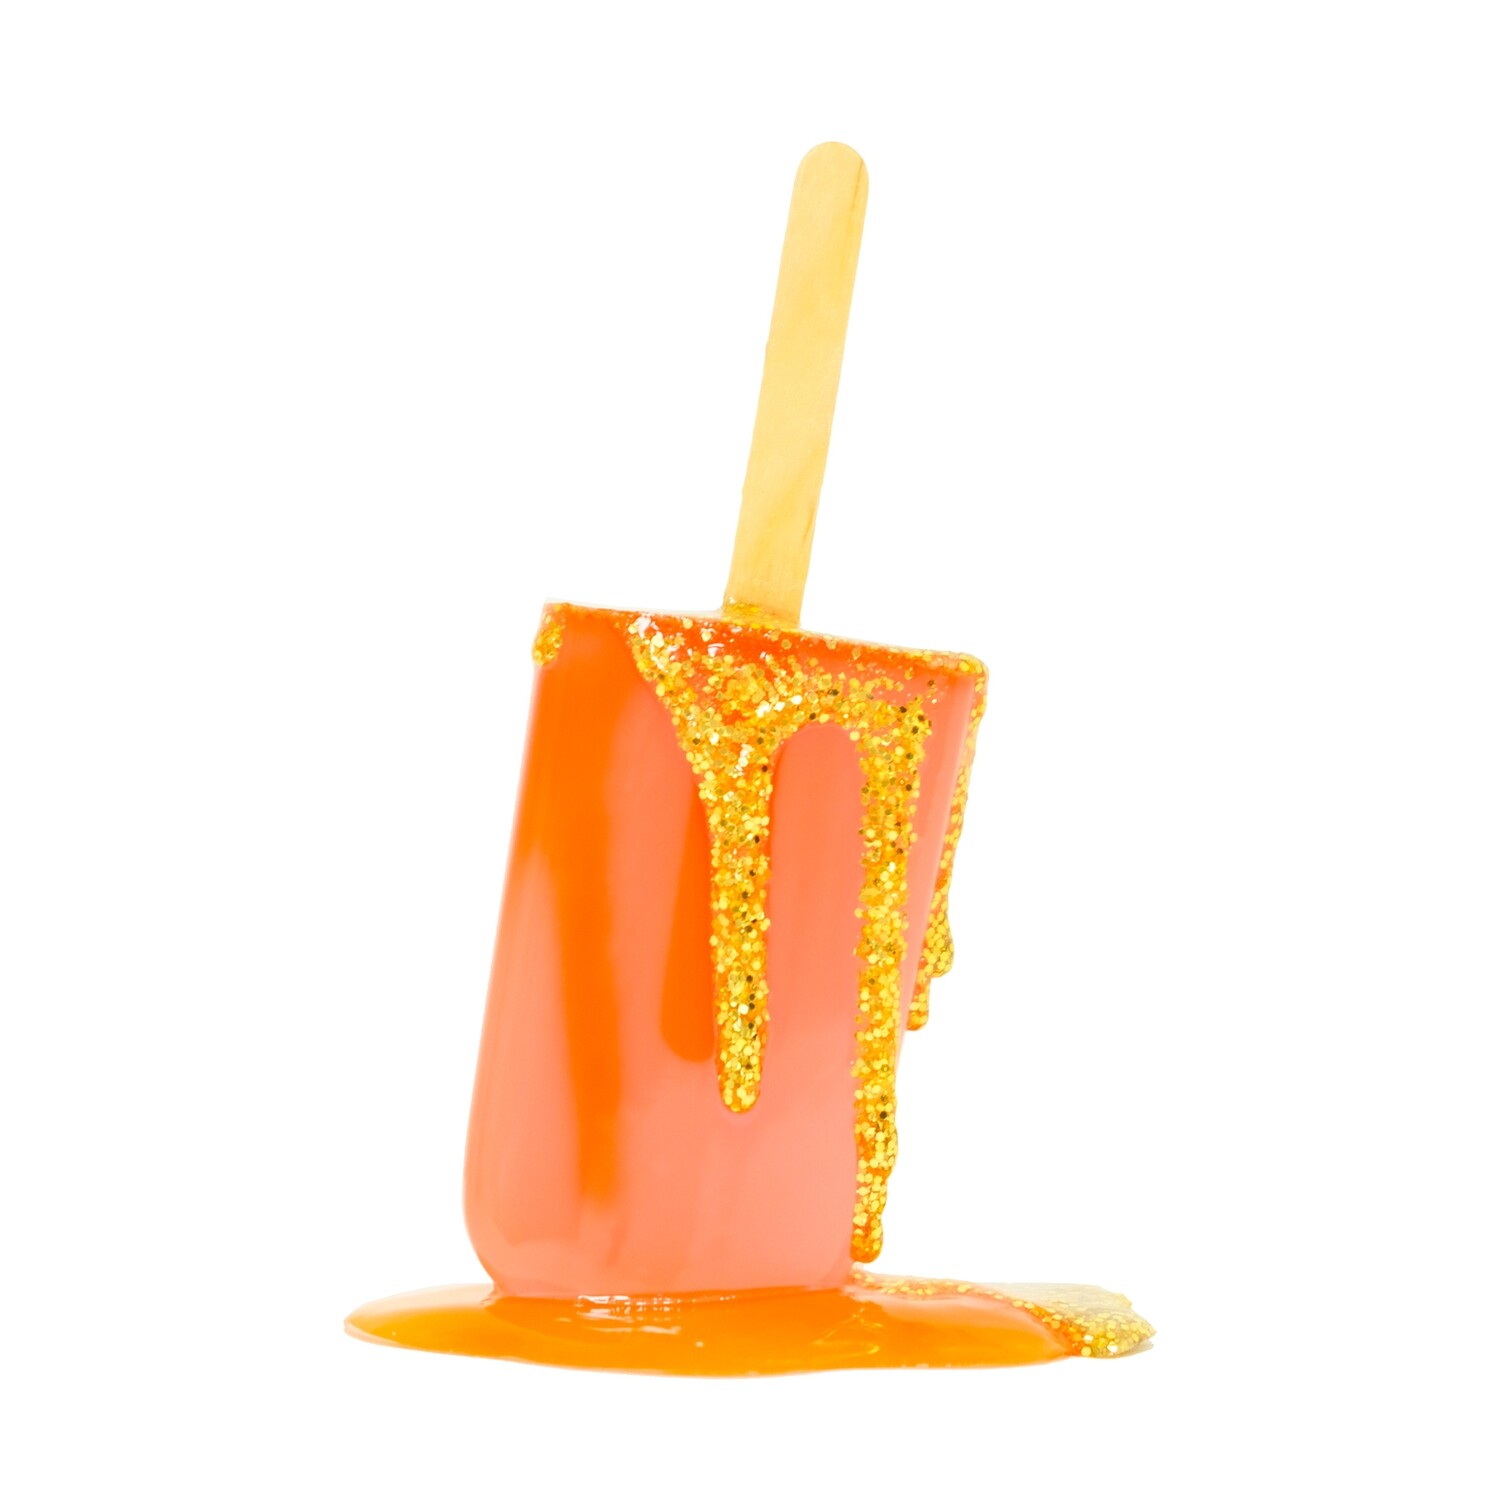 Melting Popsicle Art - 42 - Original Melting Pops